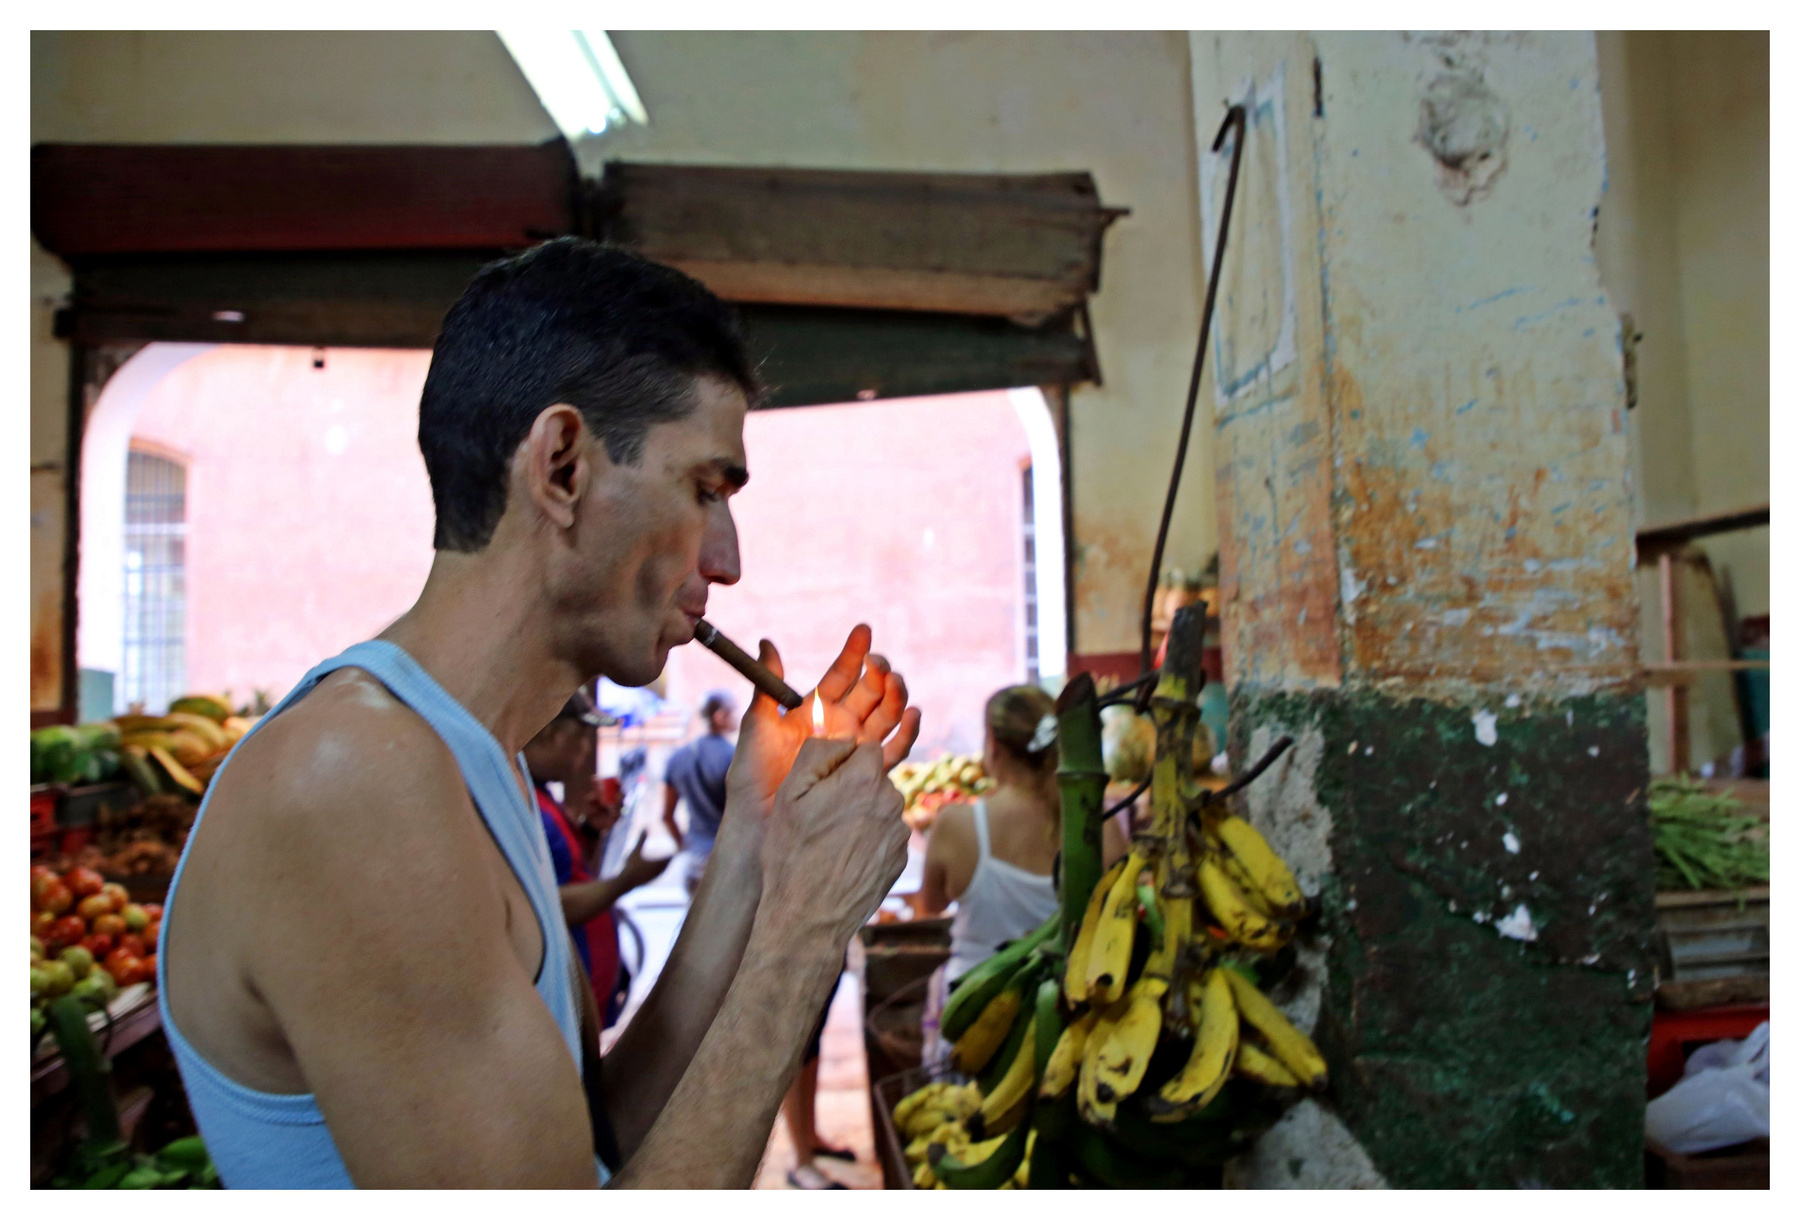 en el mercado cuba la habana vieja libre isla bonita cigarros cubanos